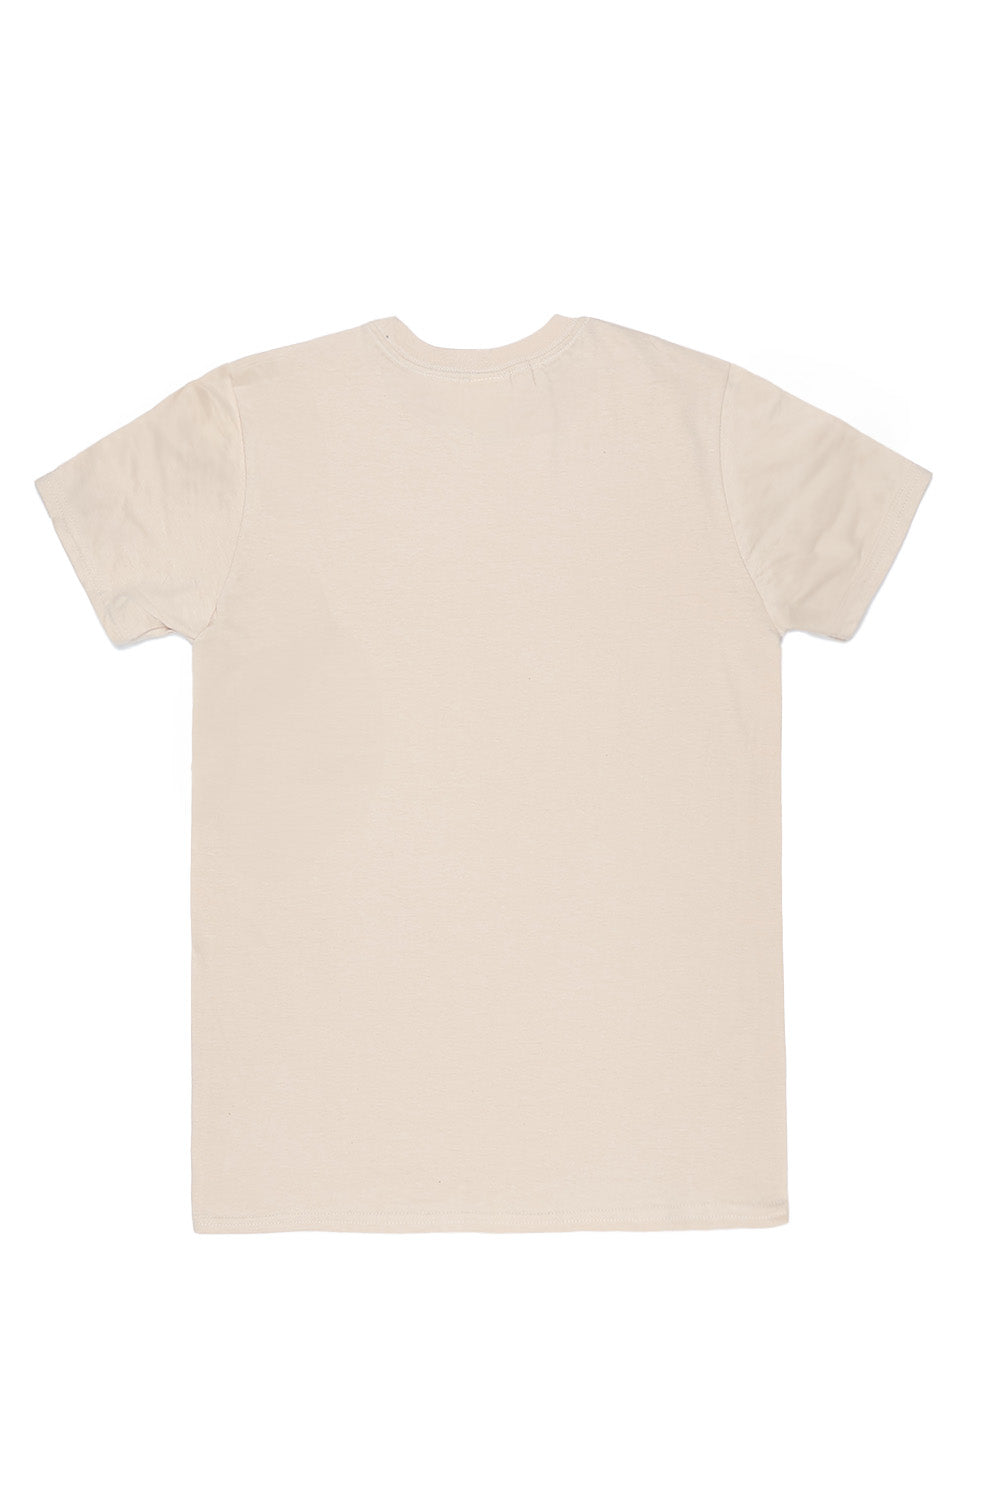 Heart of Bow's T-Shirt in Sand (Custom Packs)